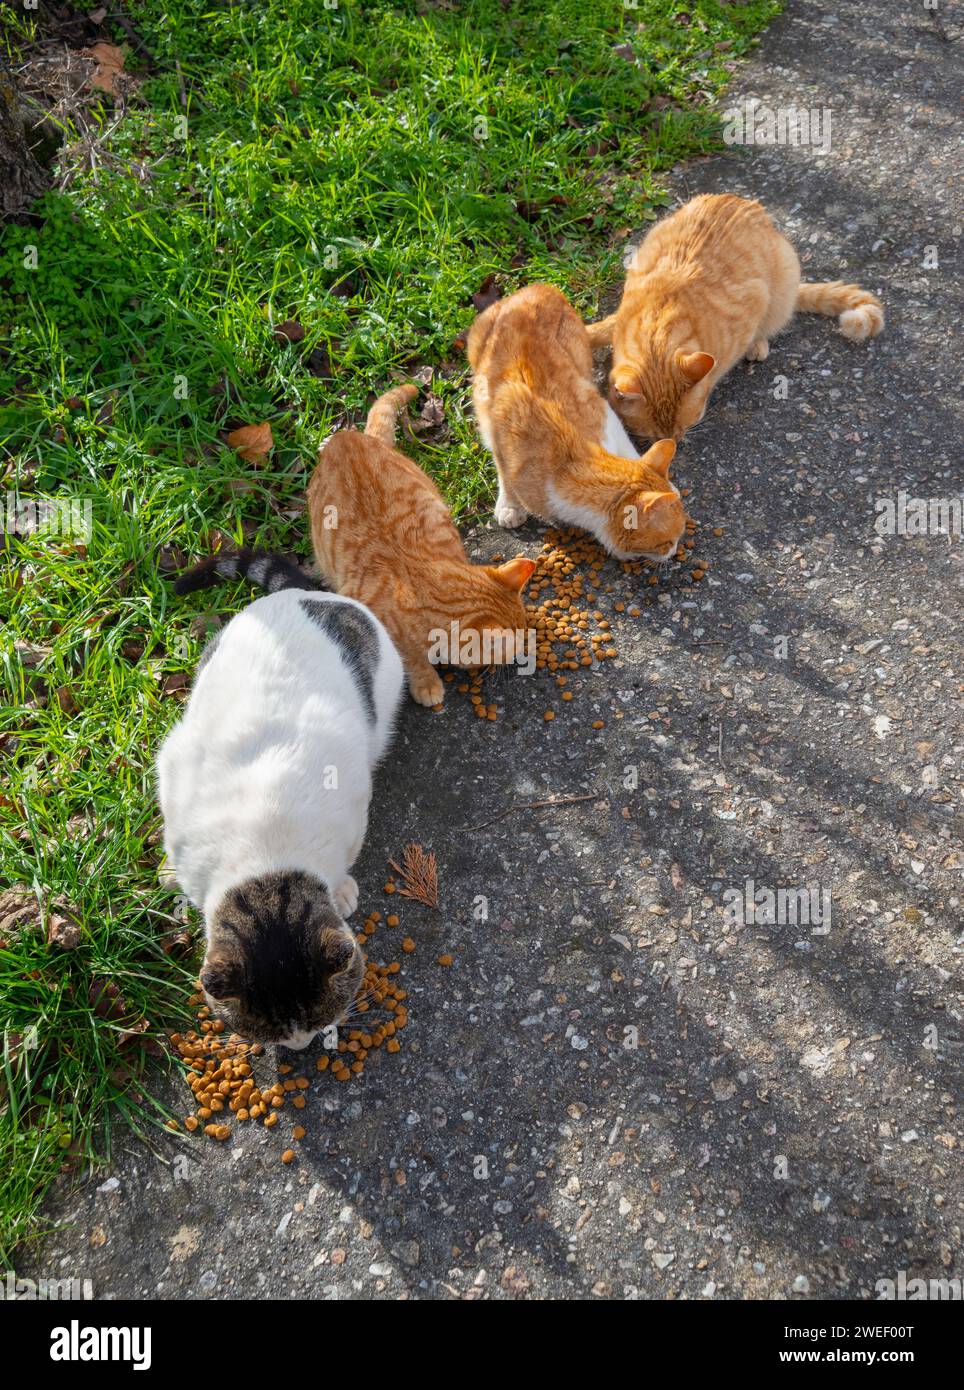 Stray cats eating. Stock Photo